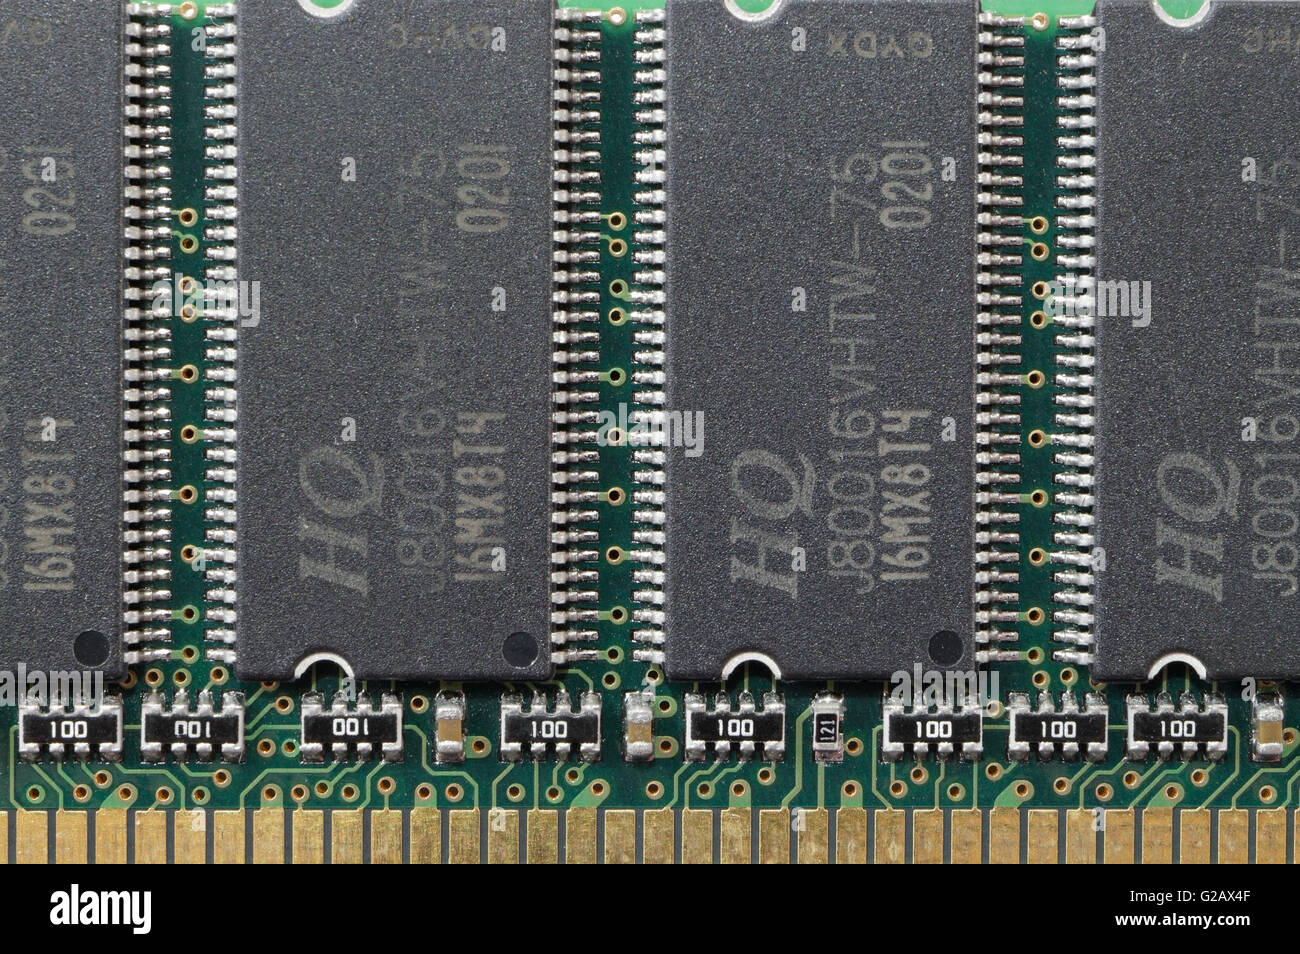 Computerspeicher integrierte Schaltungen auf einem DIMM-Leiterplattenelektronik Stockfoto